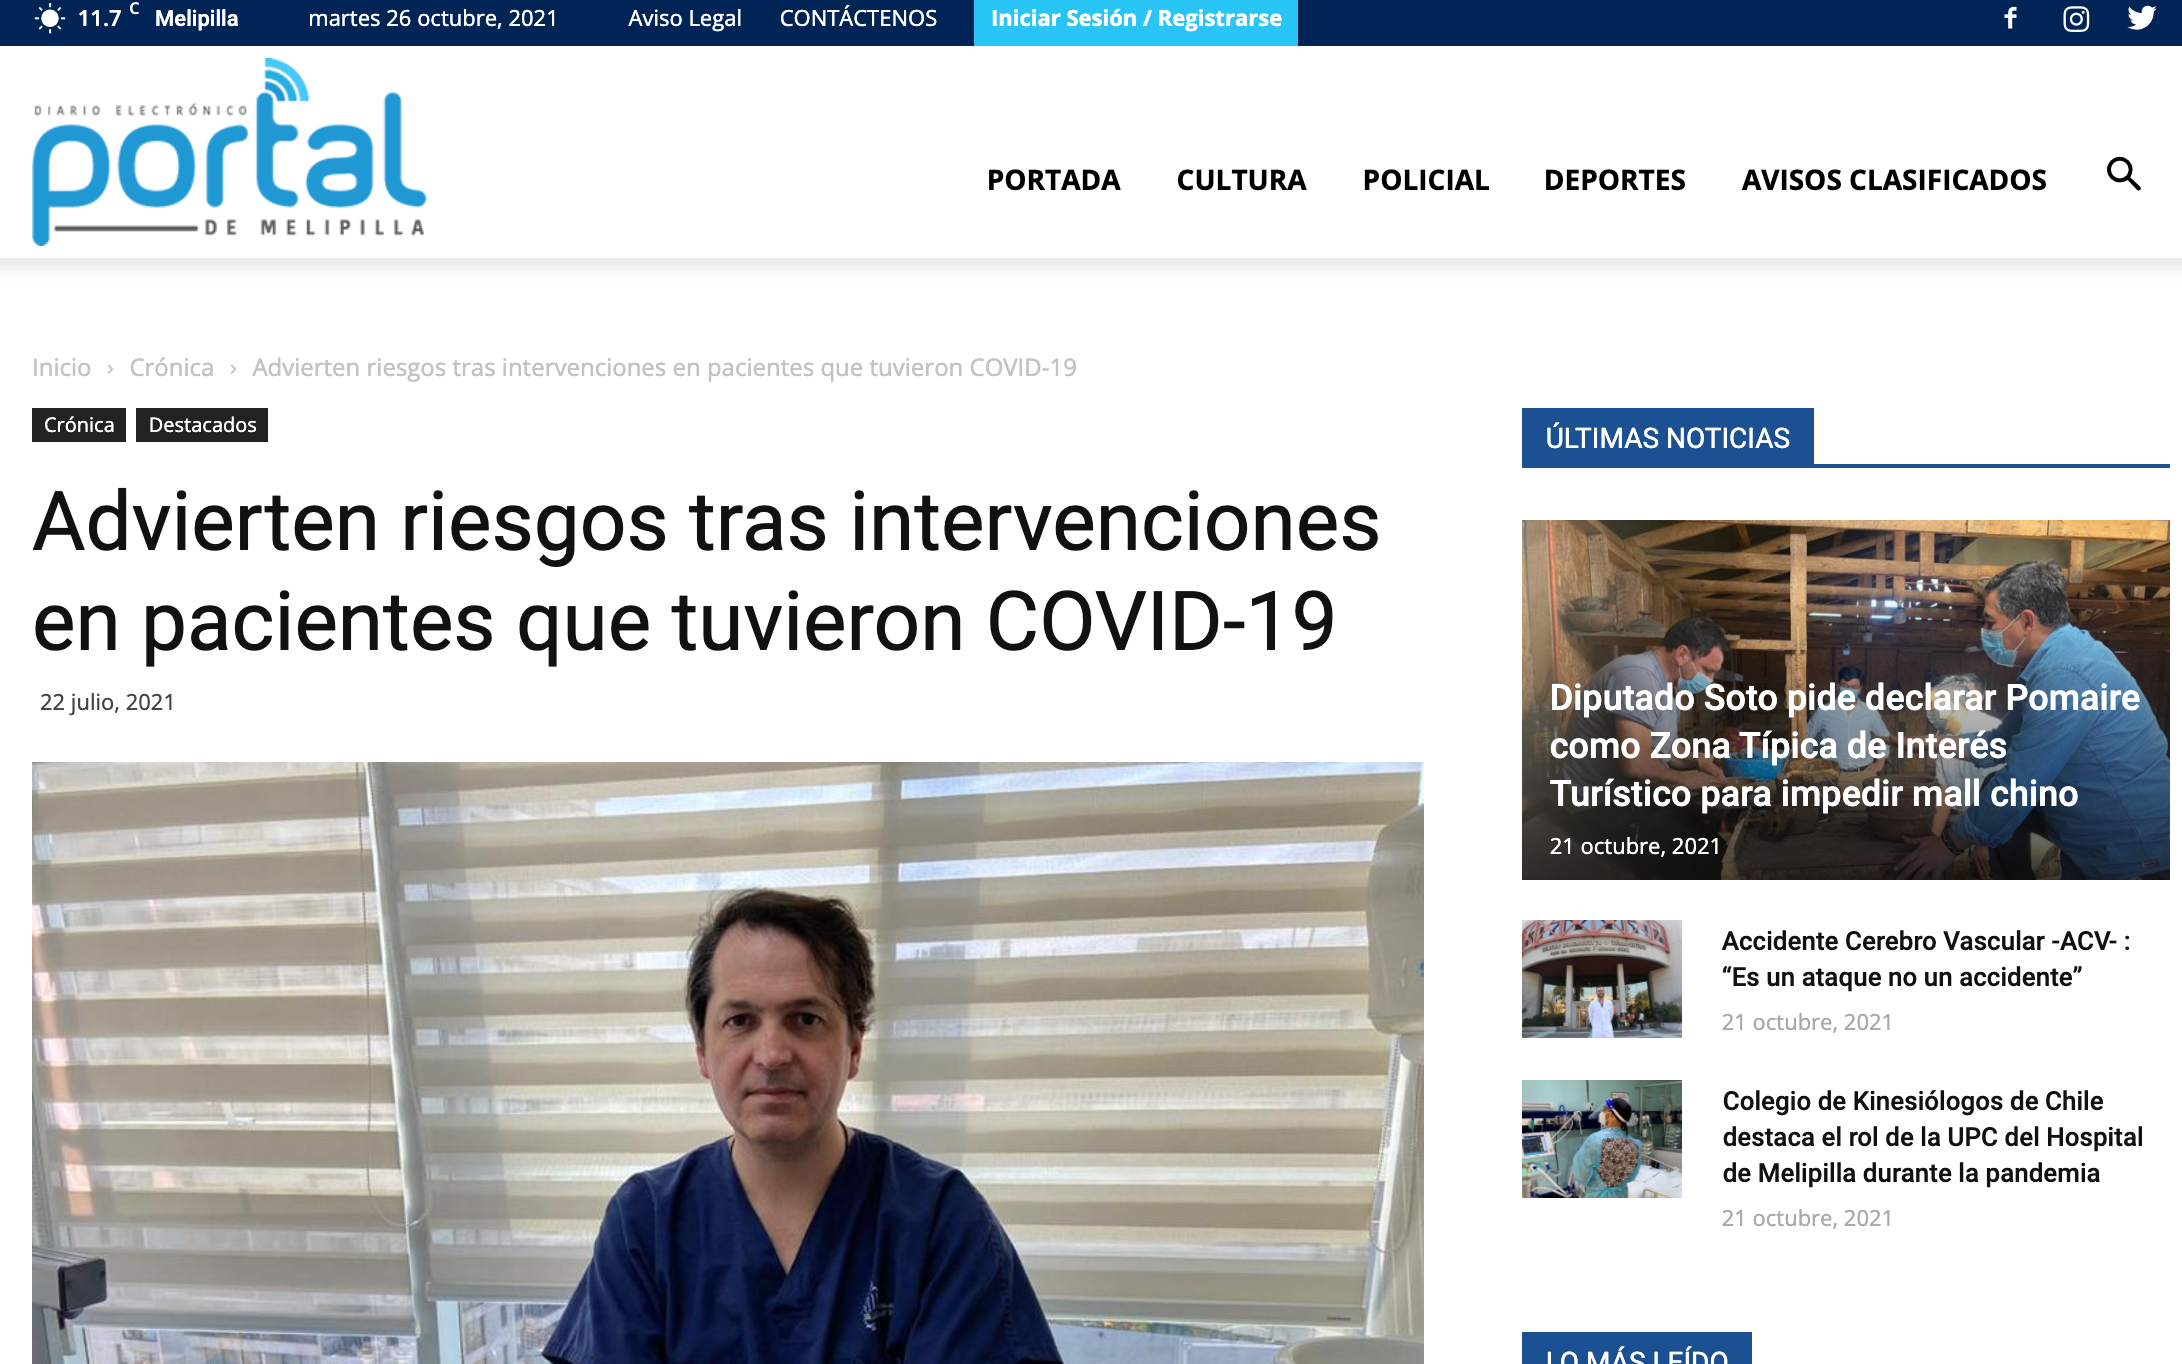 Doctor Torres habla con portal de Melipilla sobre riesgos COVID-19, Wam Center